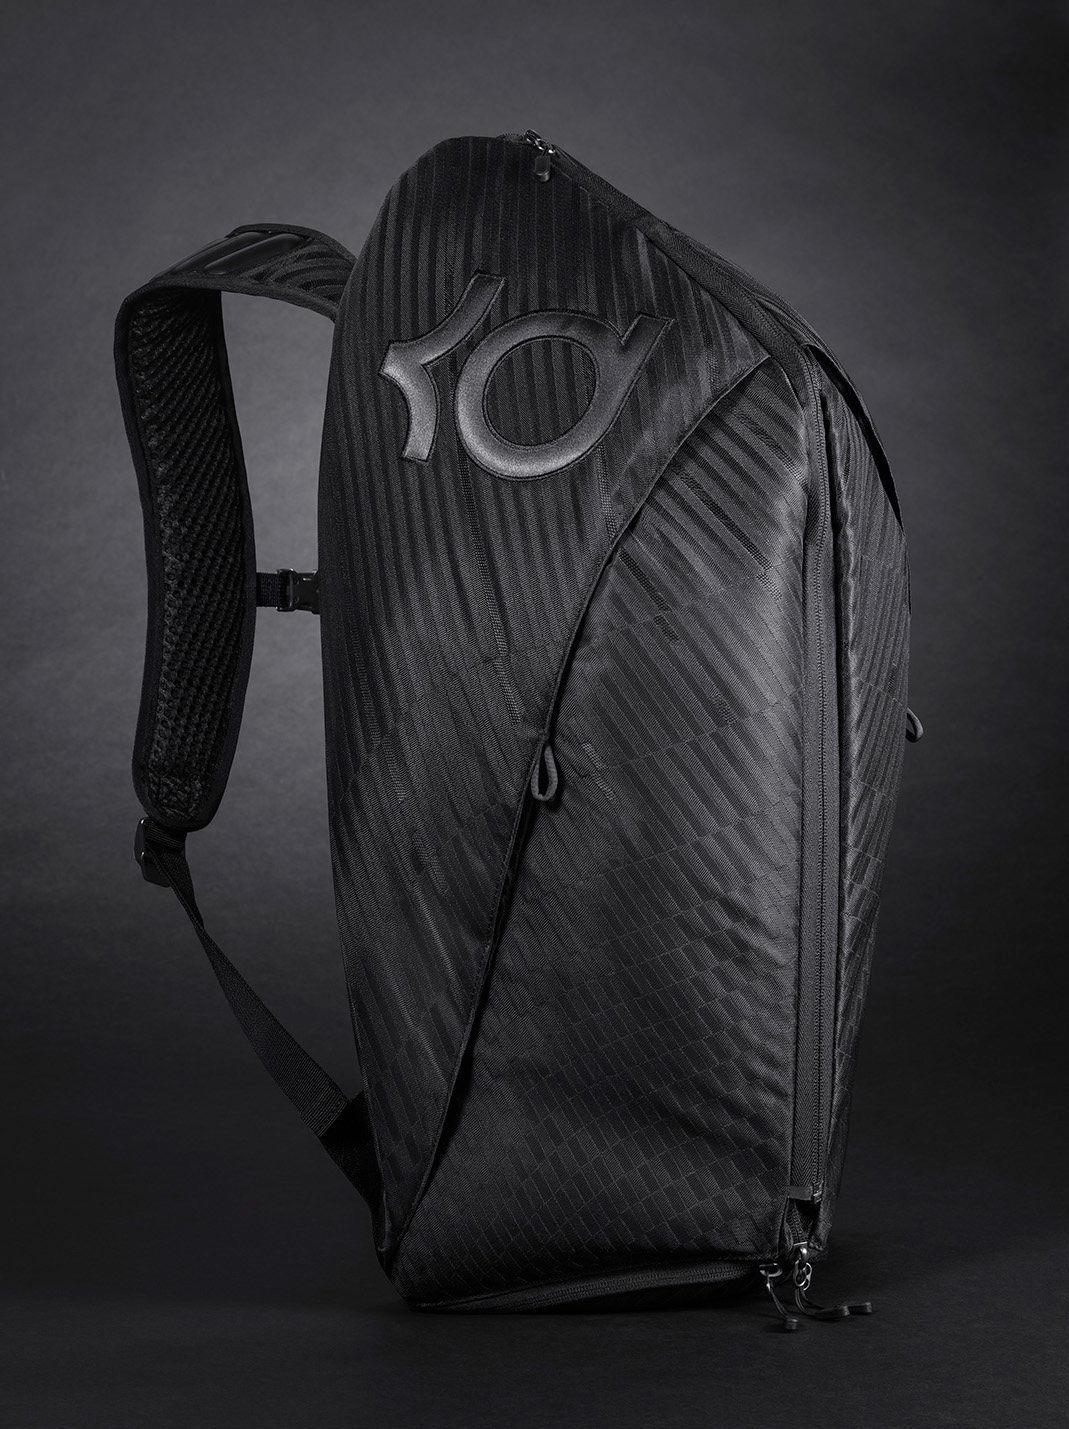 jacquard engineered jacquard soft goods design backpack soft goods kd Kevin Durant Backpack basketball basketball backpack Nike Backpack Backpack design